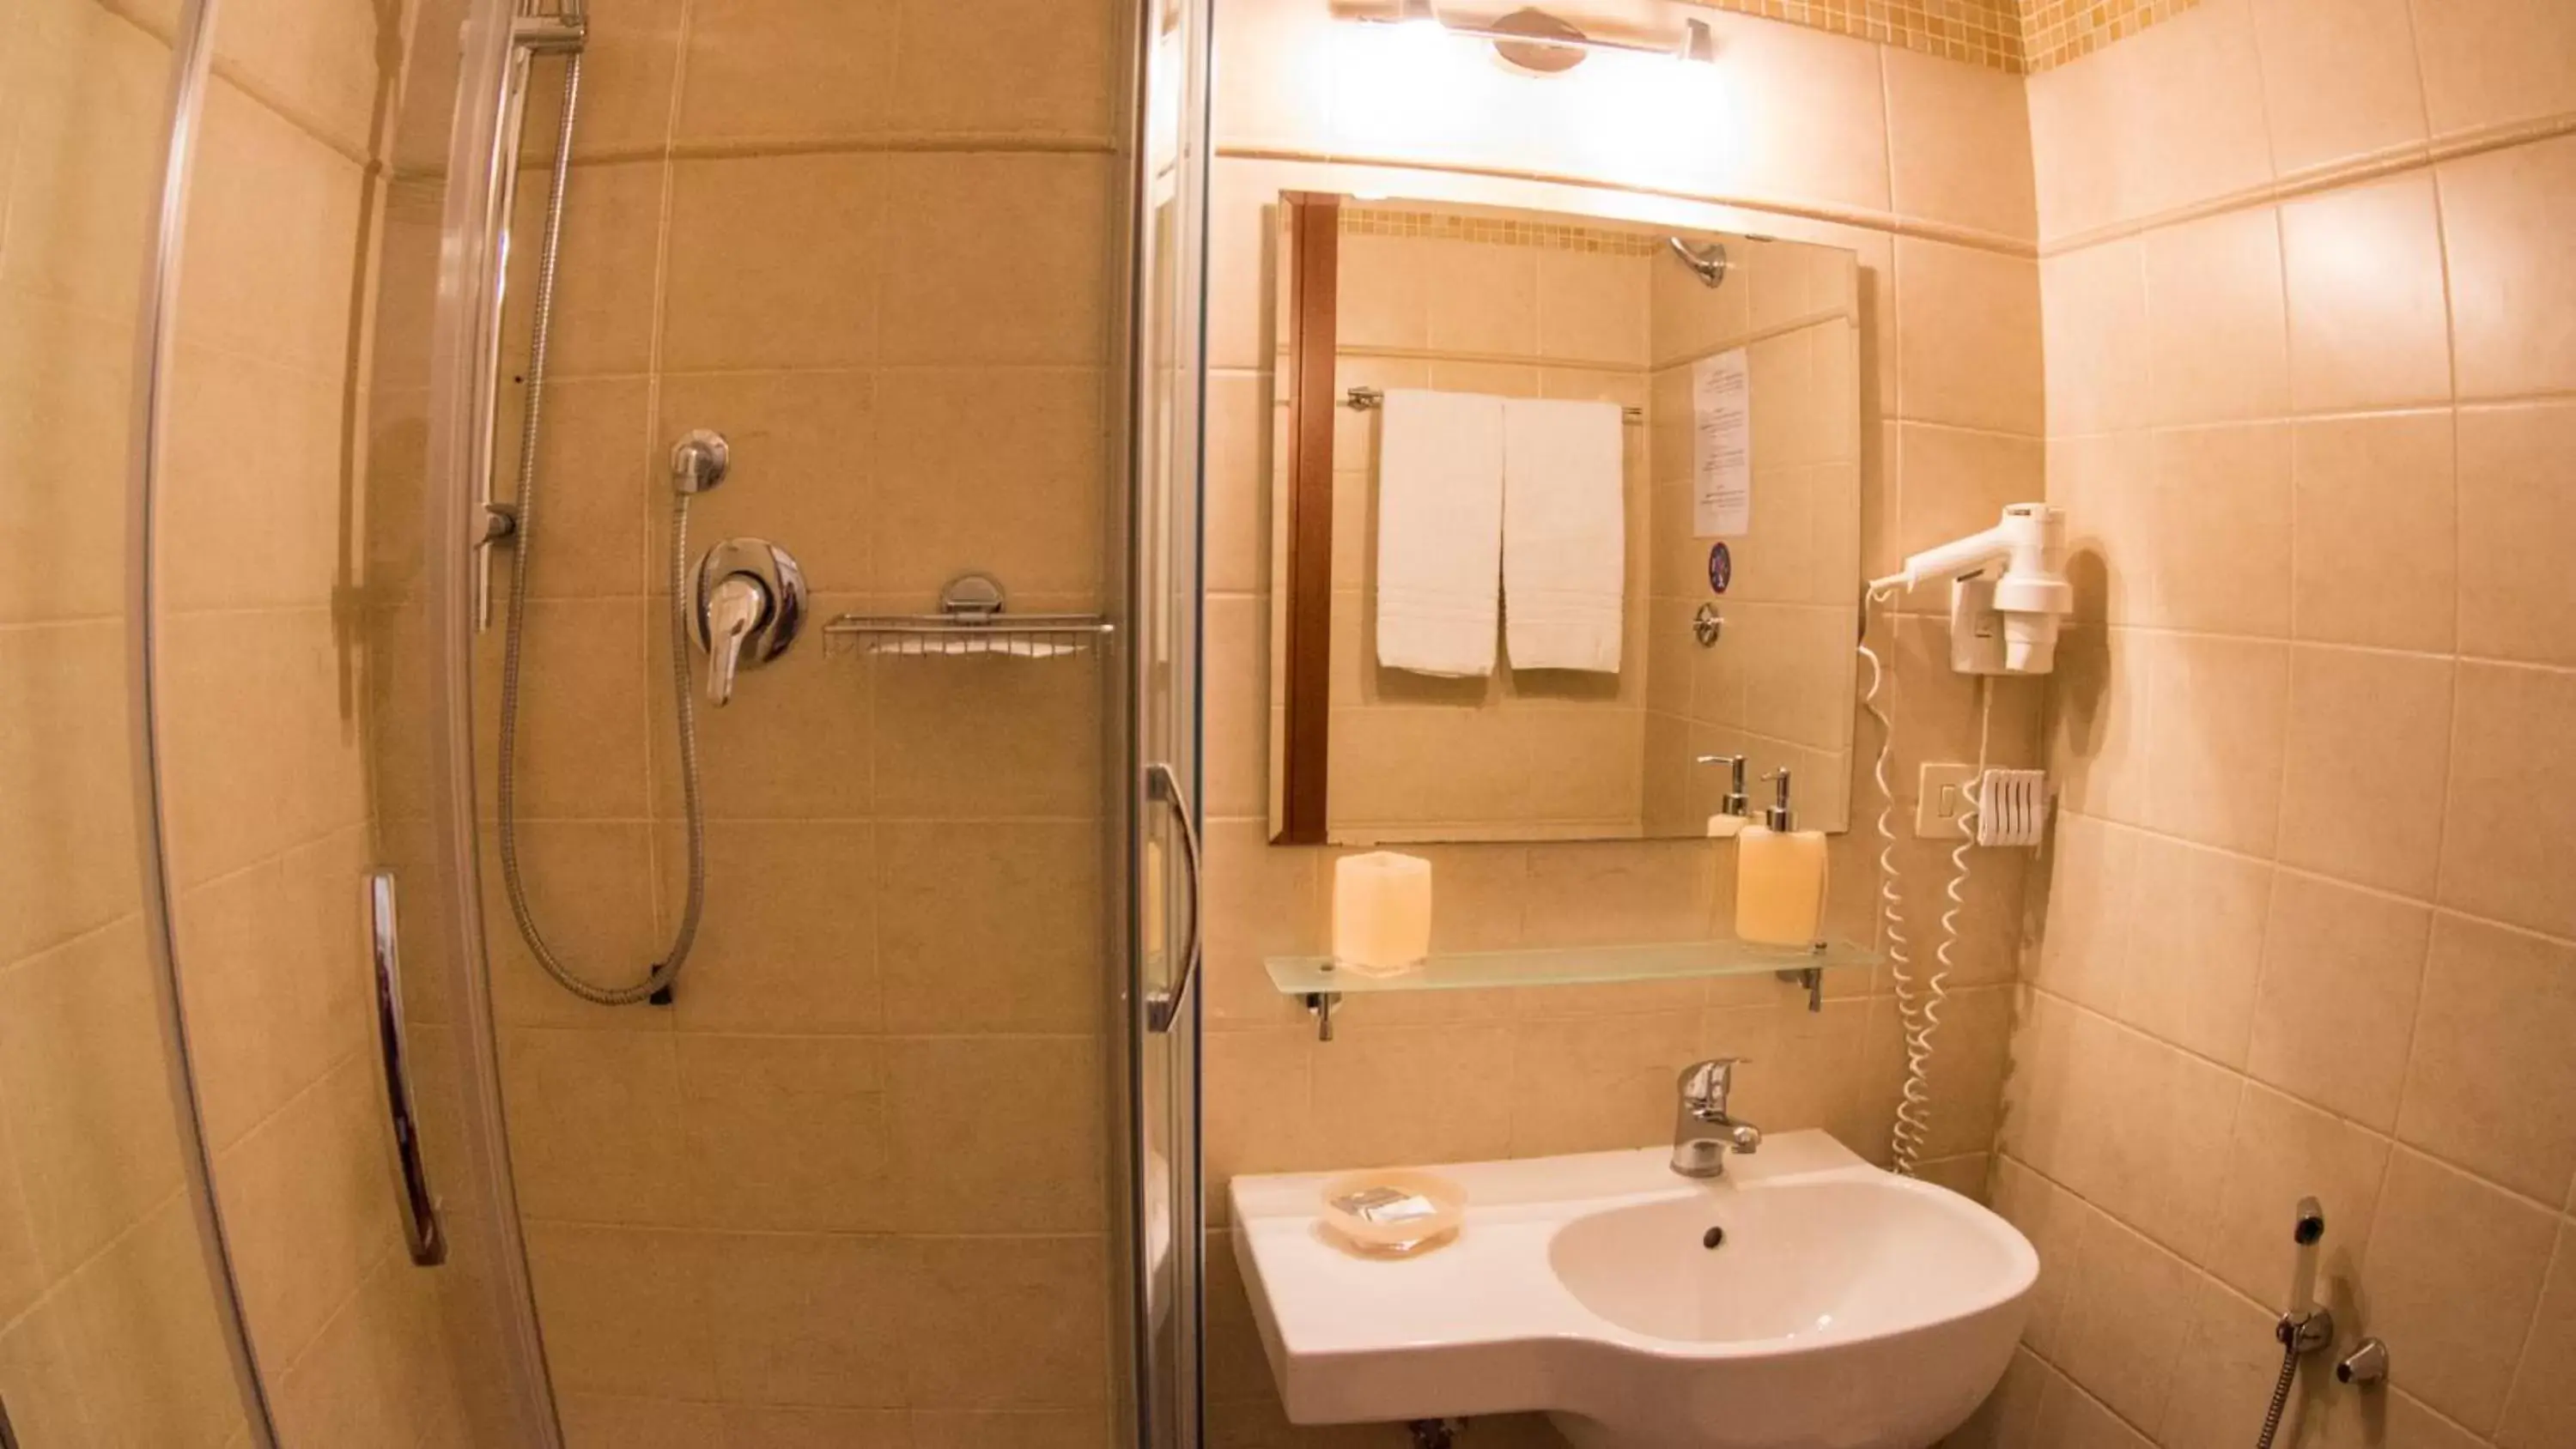 Bathroom in Hotel Martino Ai Monti